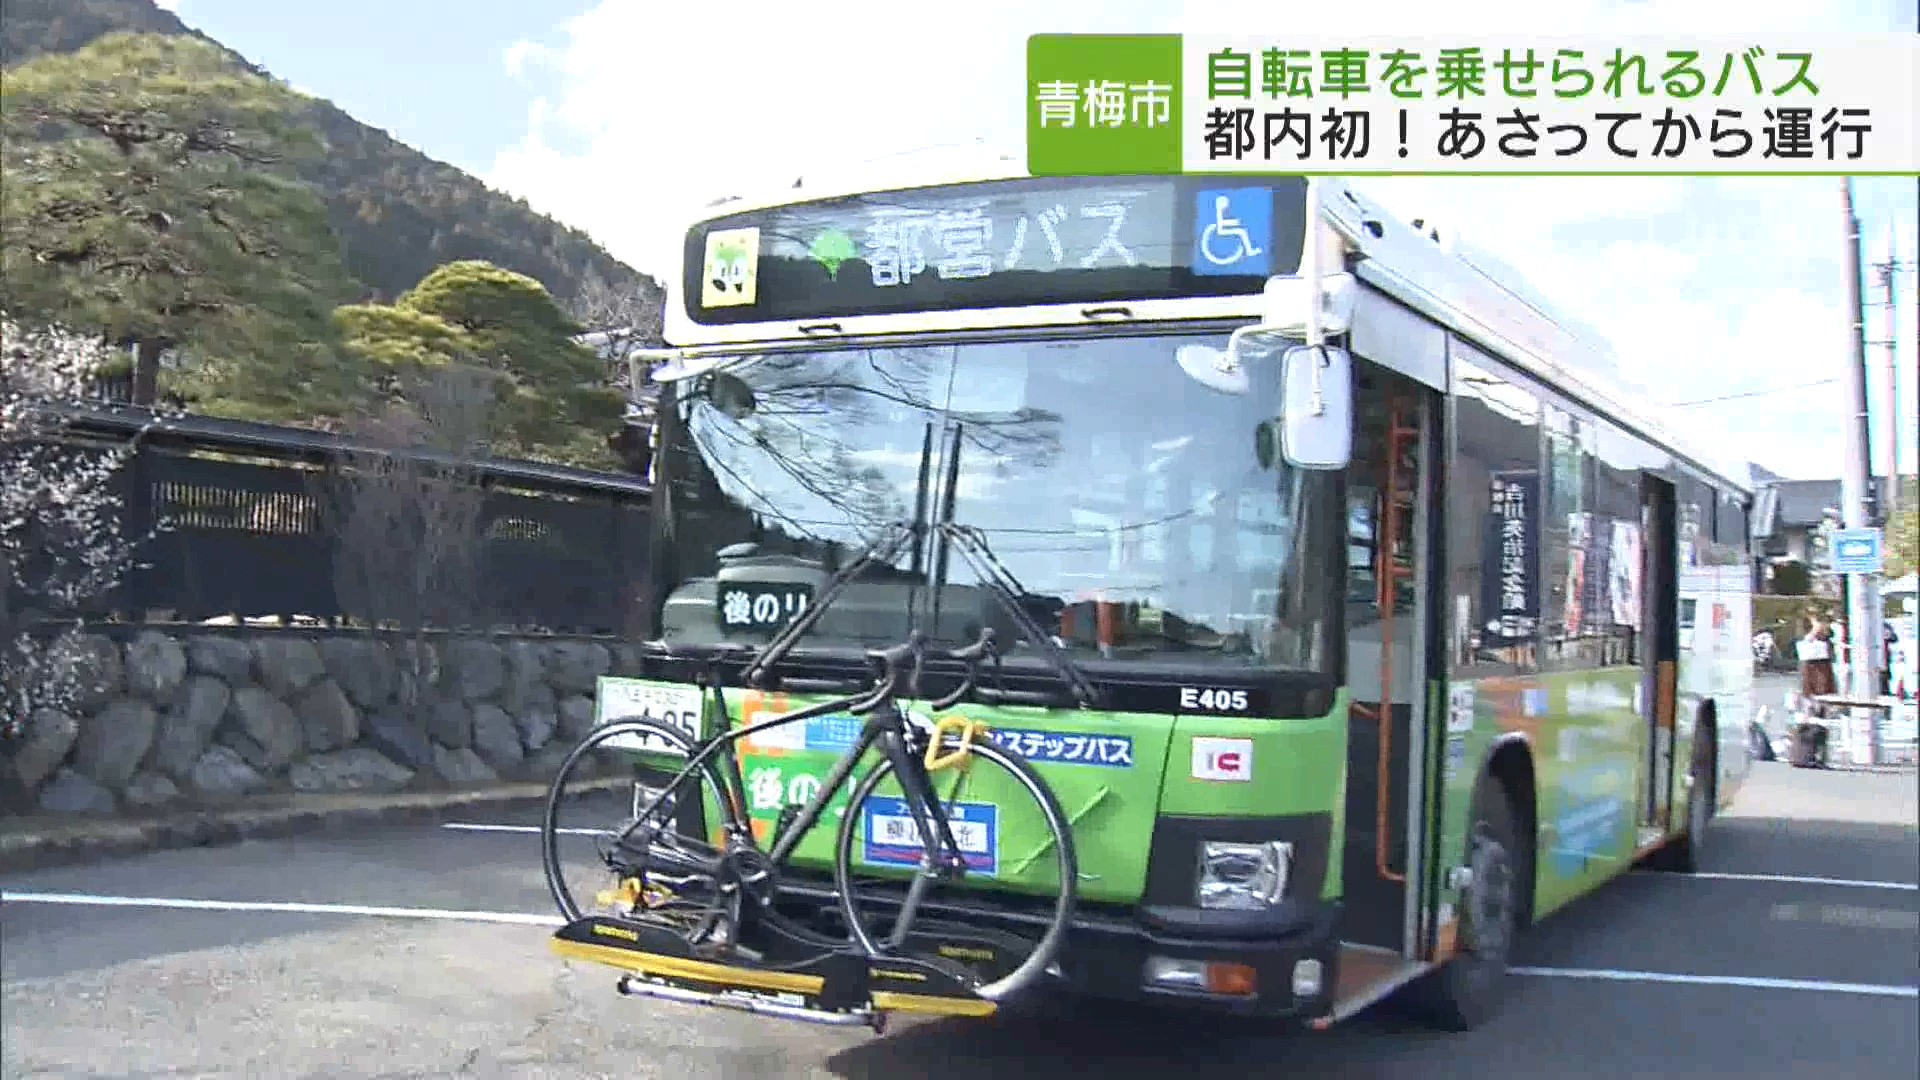 都内の路線バスで初めて、自転車を乗せられるバスの運行が3月16日から青梅市内で始まります。運行に先駆けて、3月14日にデモンストレーションが行われました。